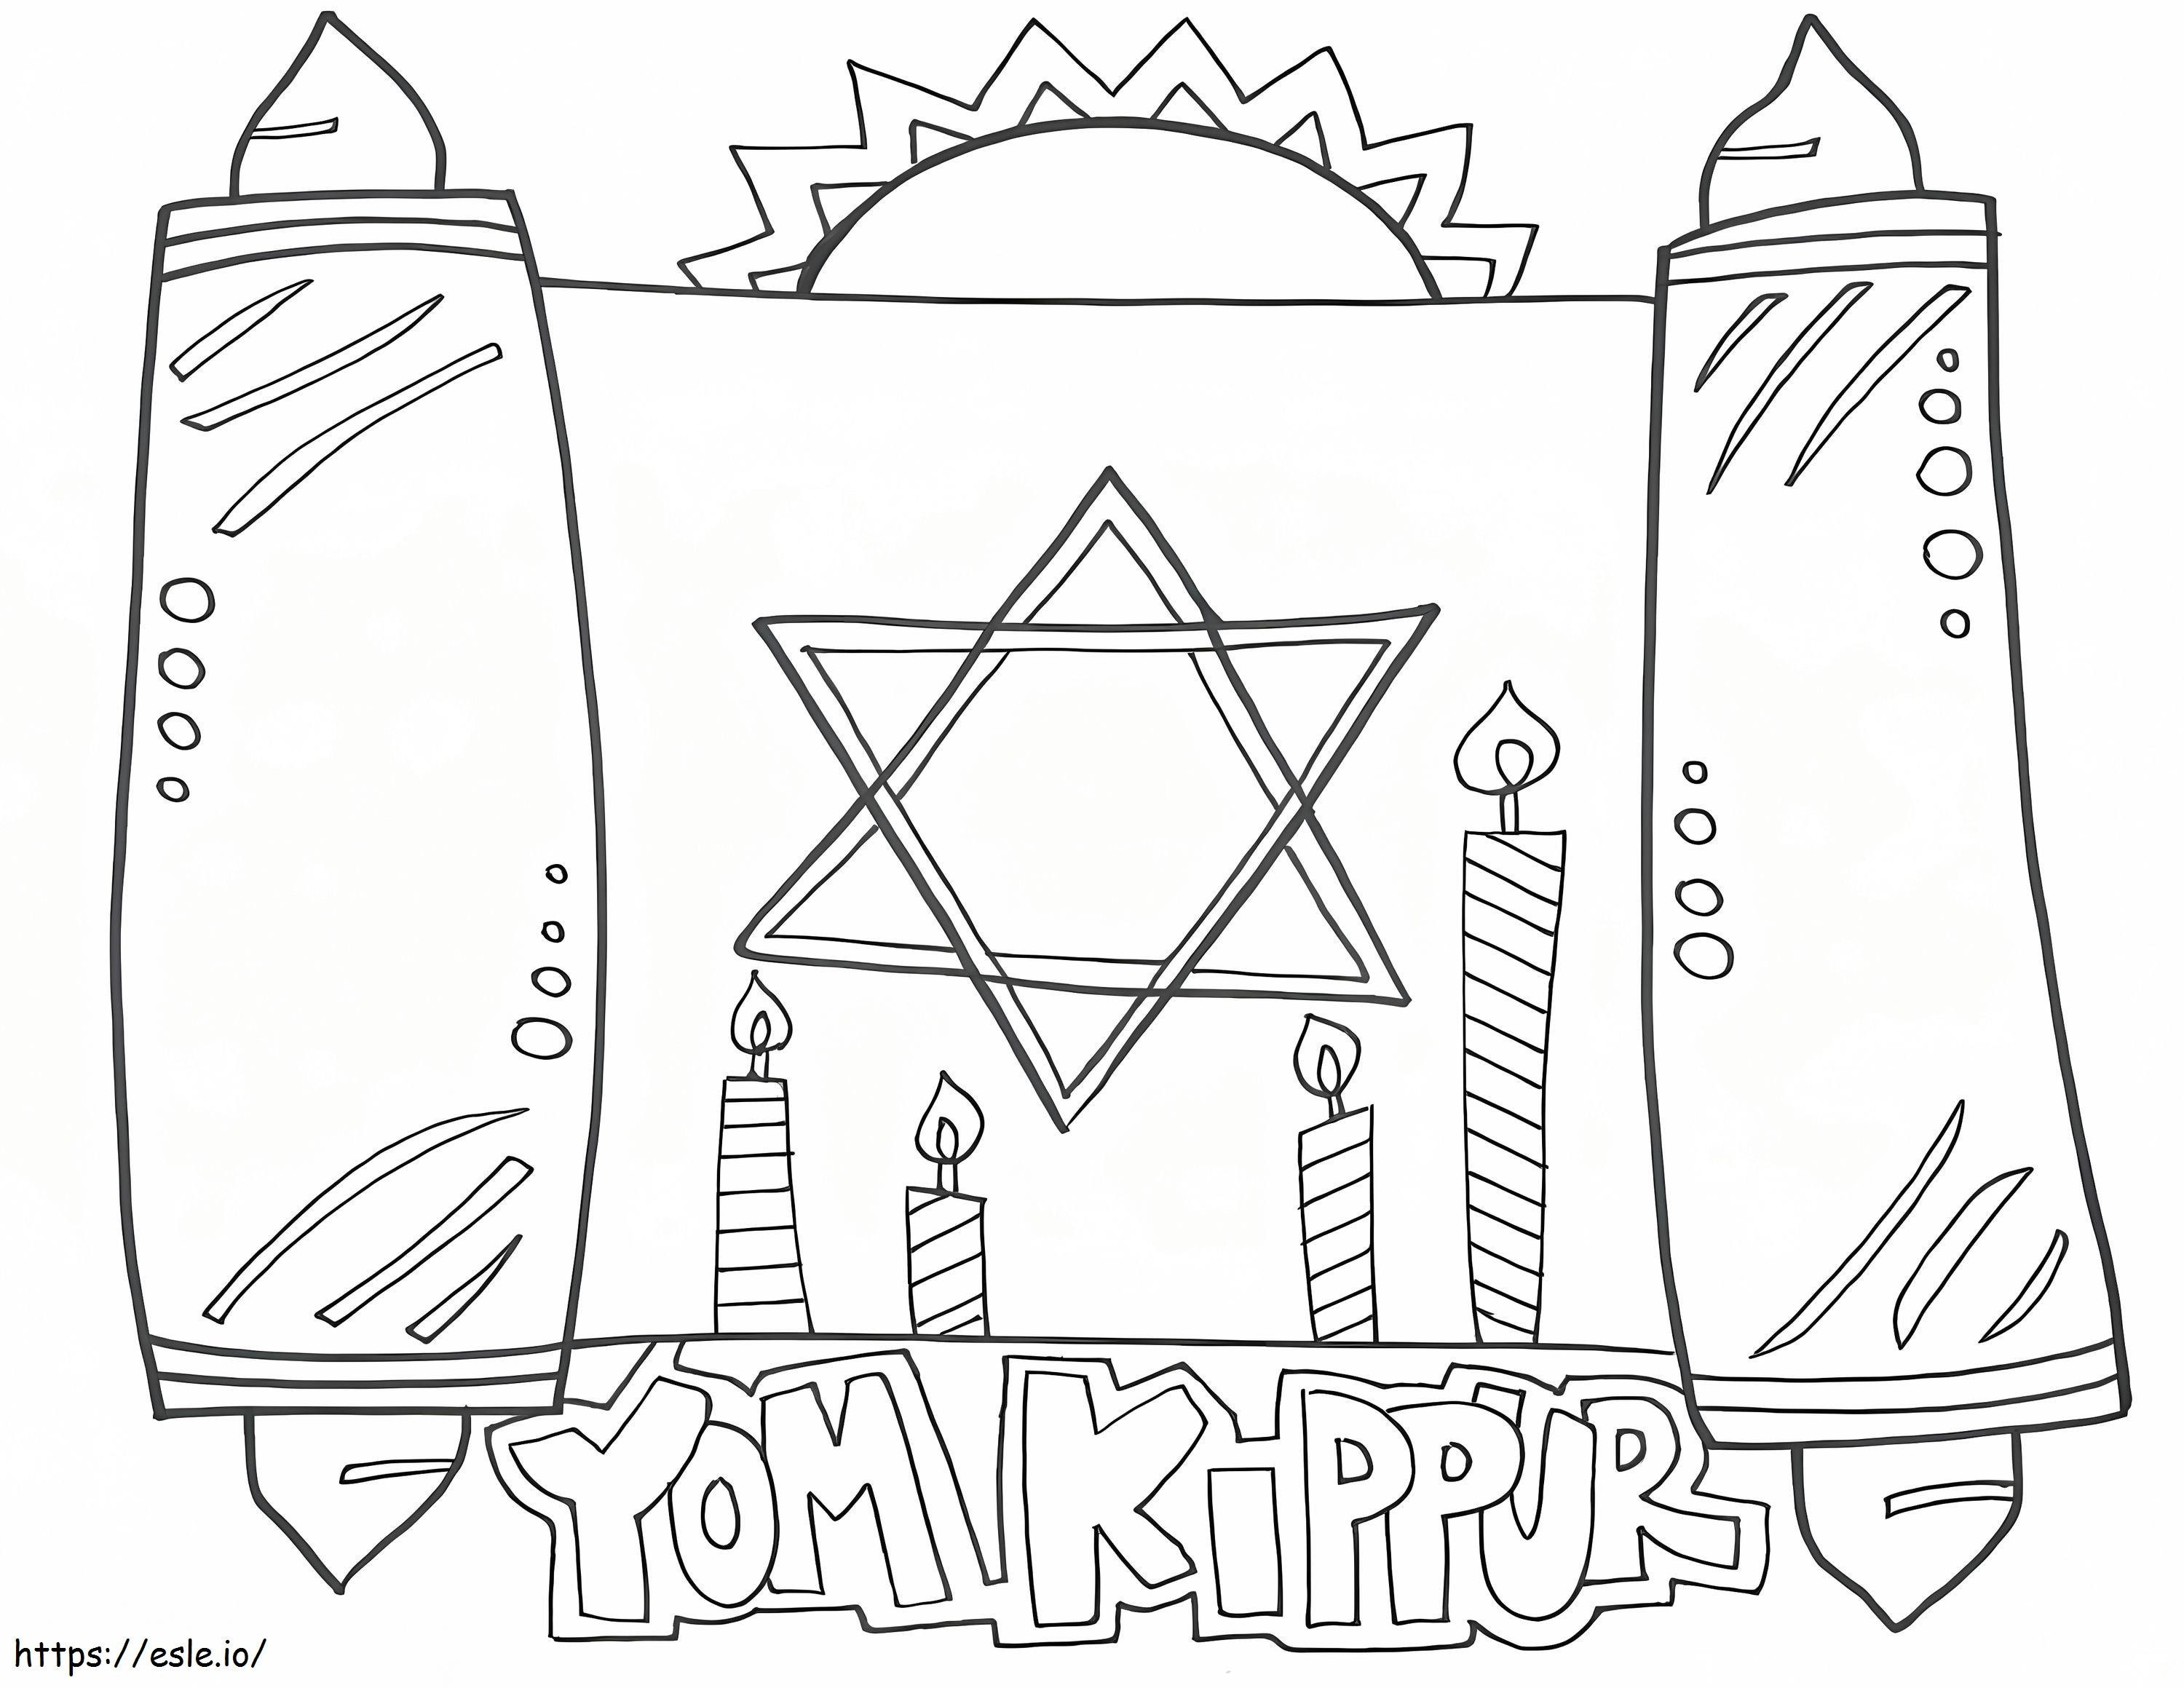 Jom Kippur 2 ausmalbilder